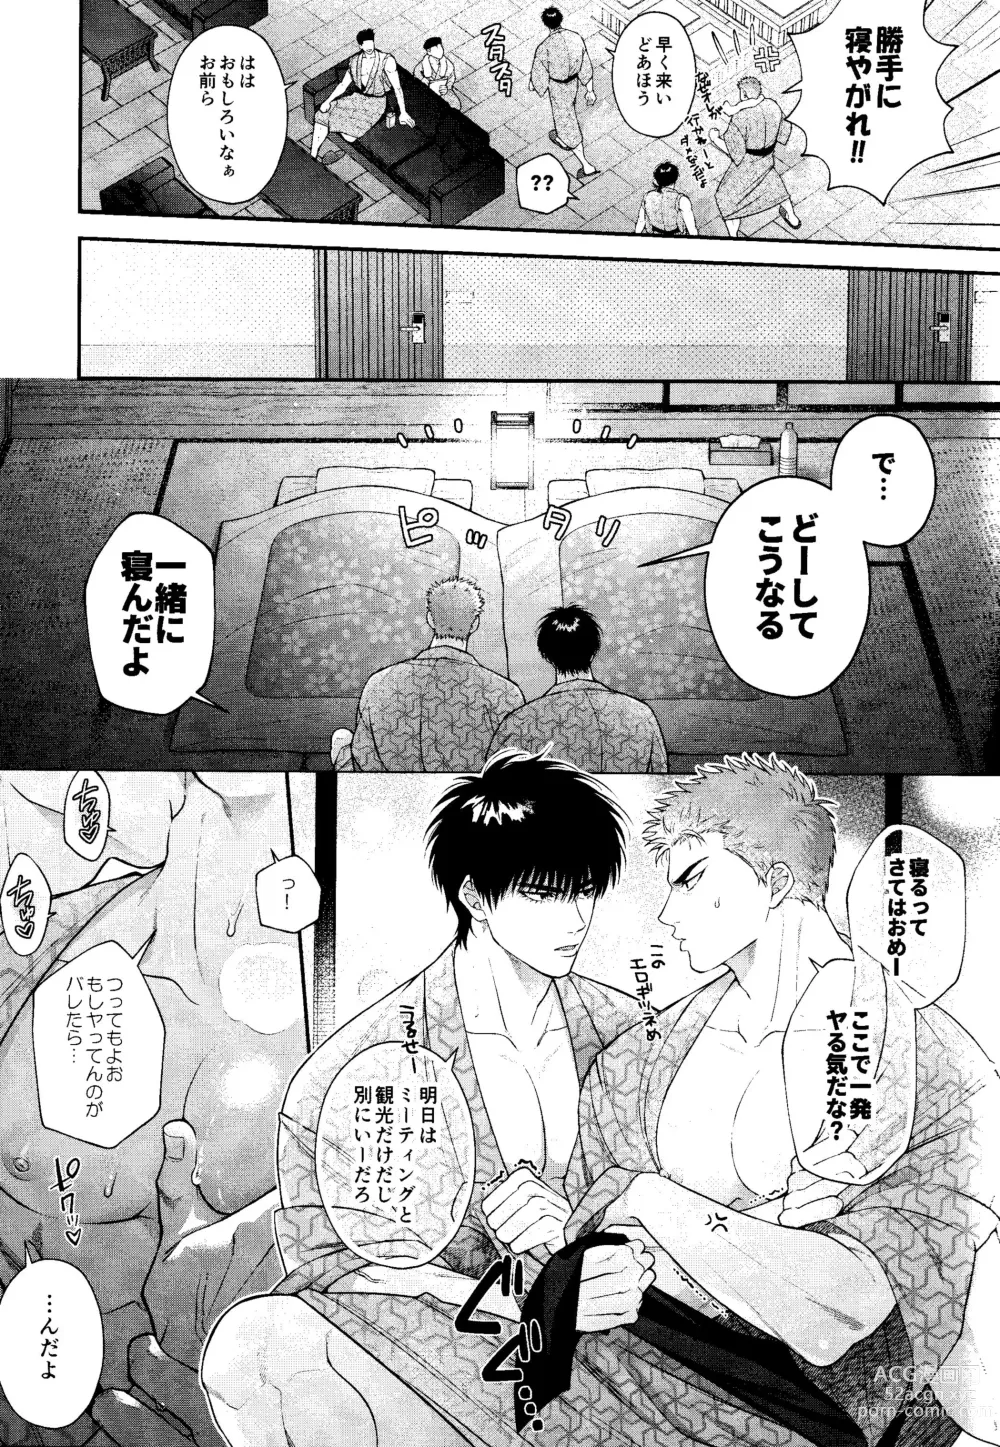 Page 7 of doujinshi Subeteha Kawaii teme-no Sei!